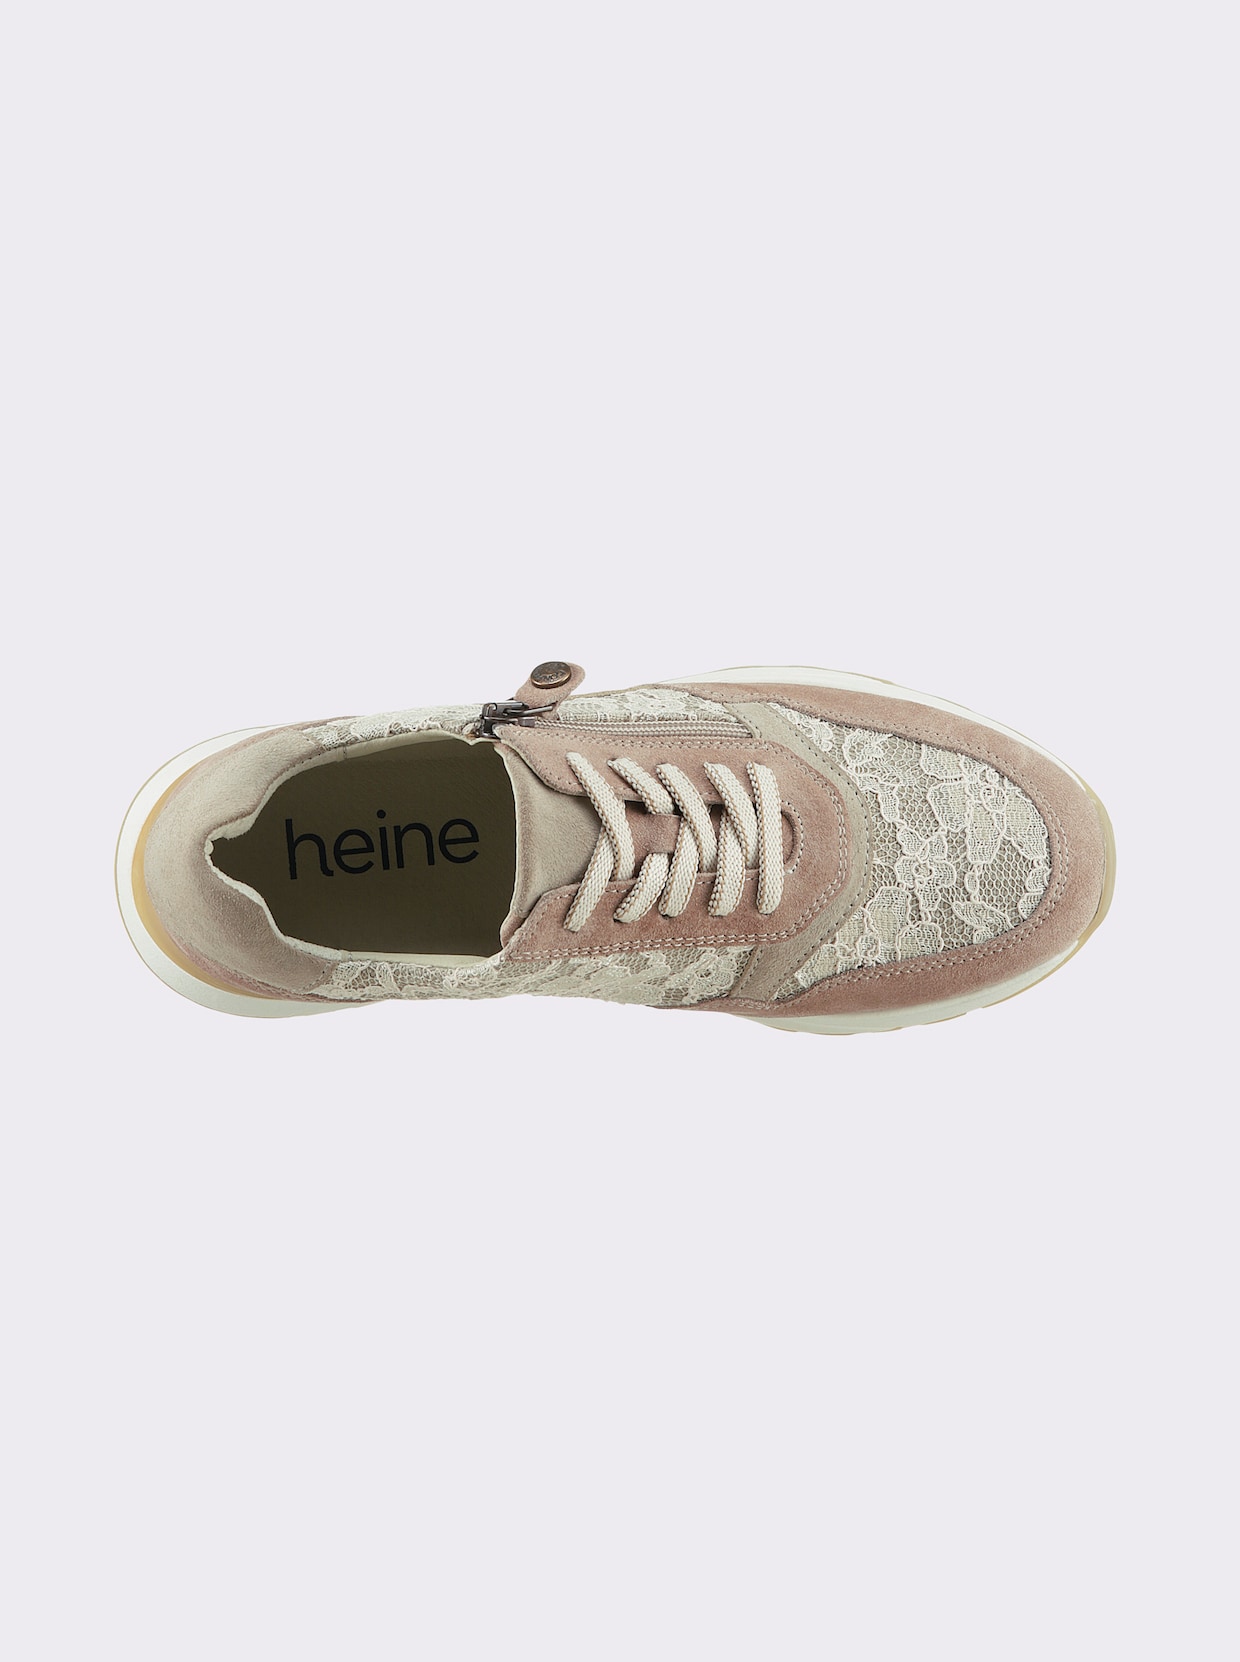 heine Sneaker - rose